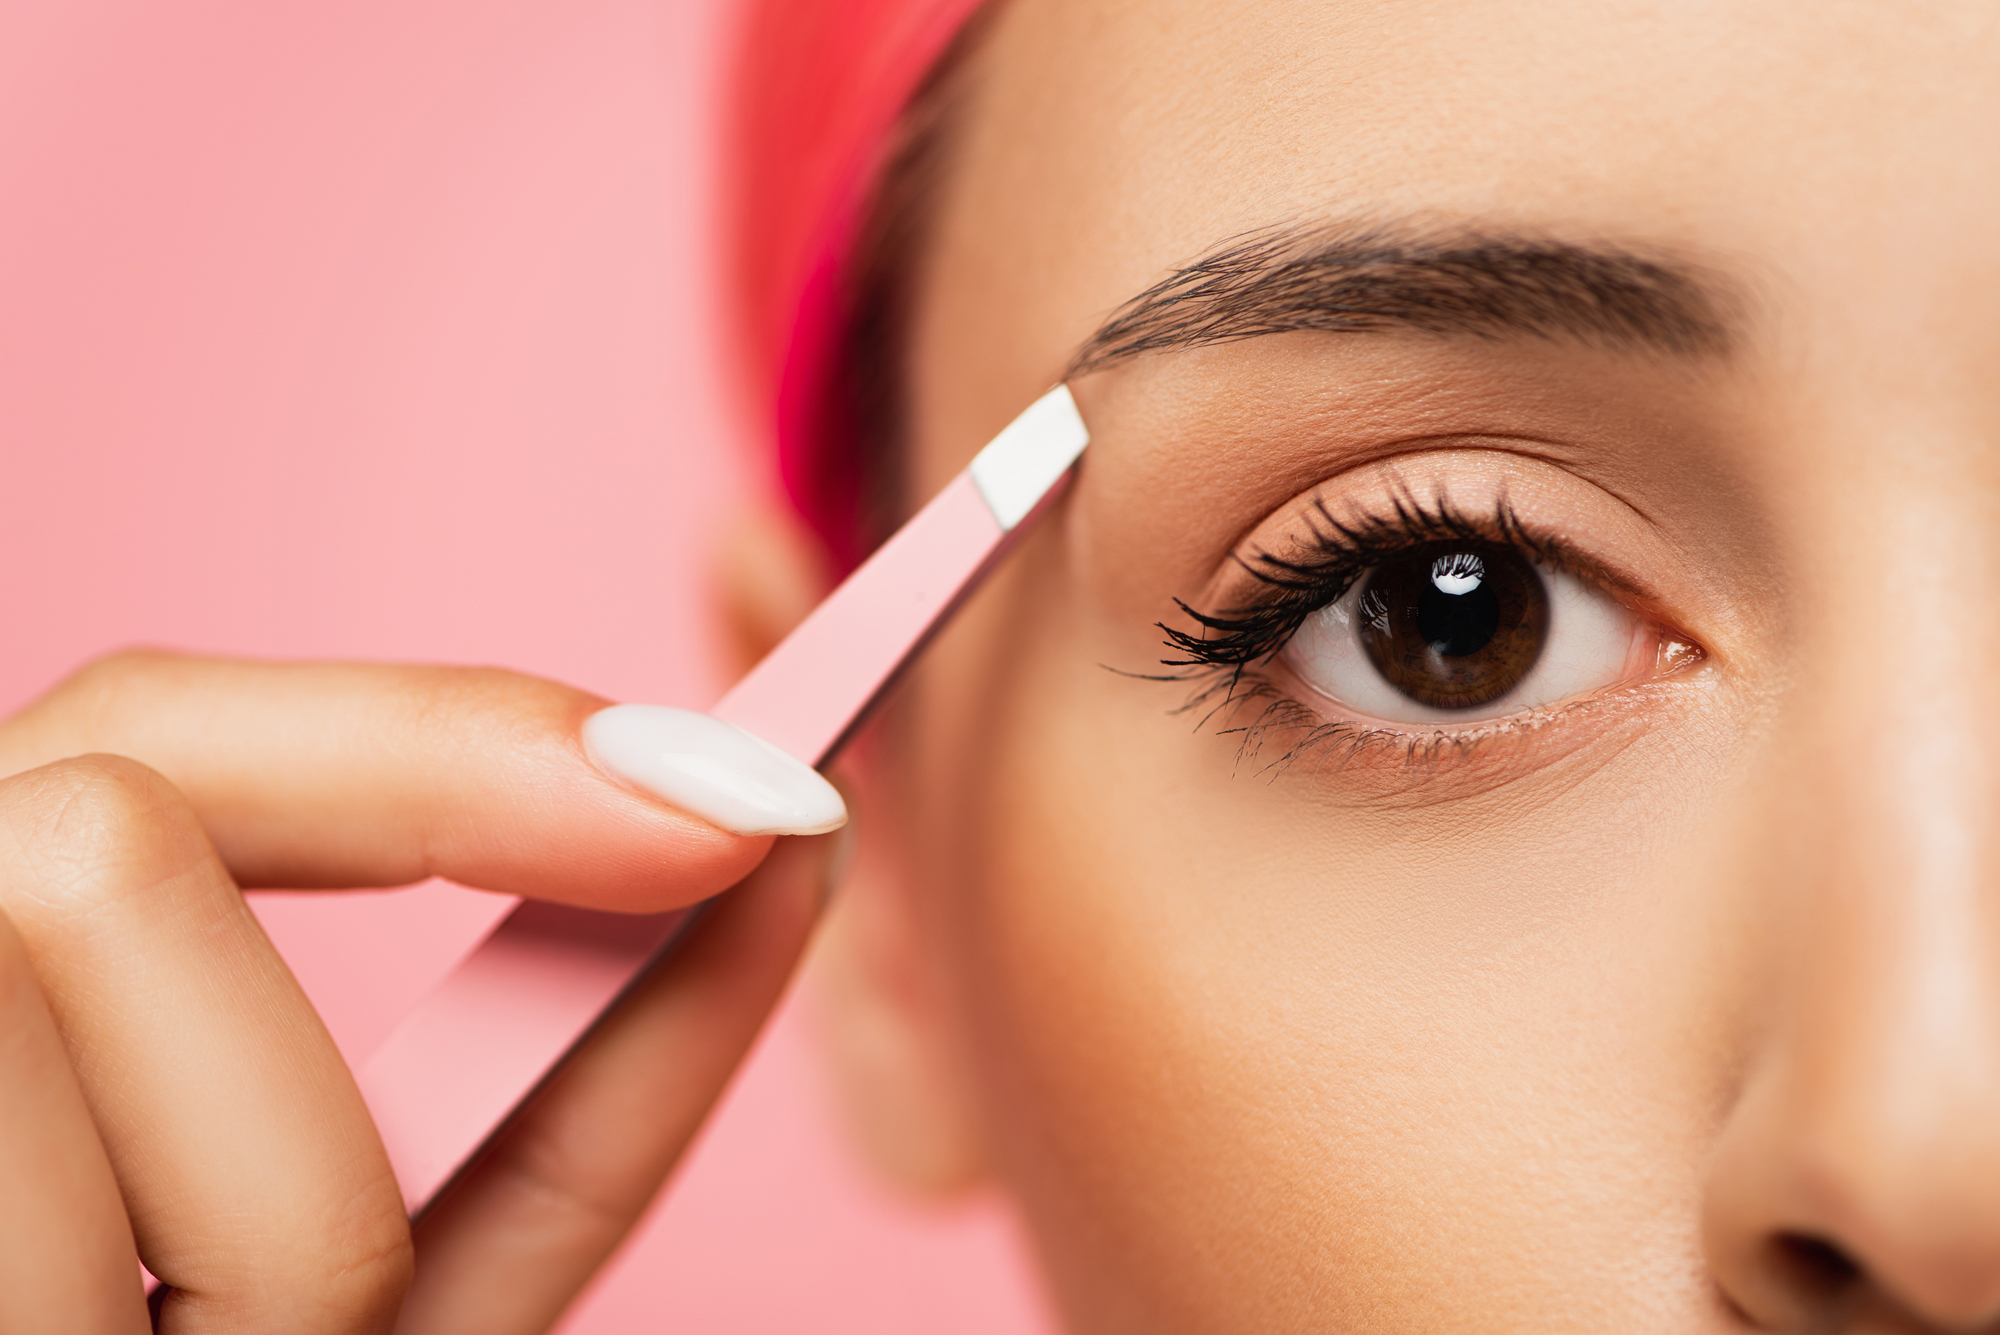 Top 5 Baby Pink Eyebrow Tweezers for Precision Grooming